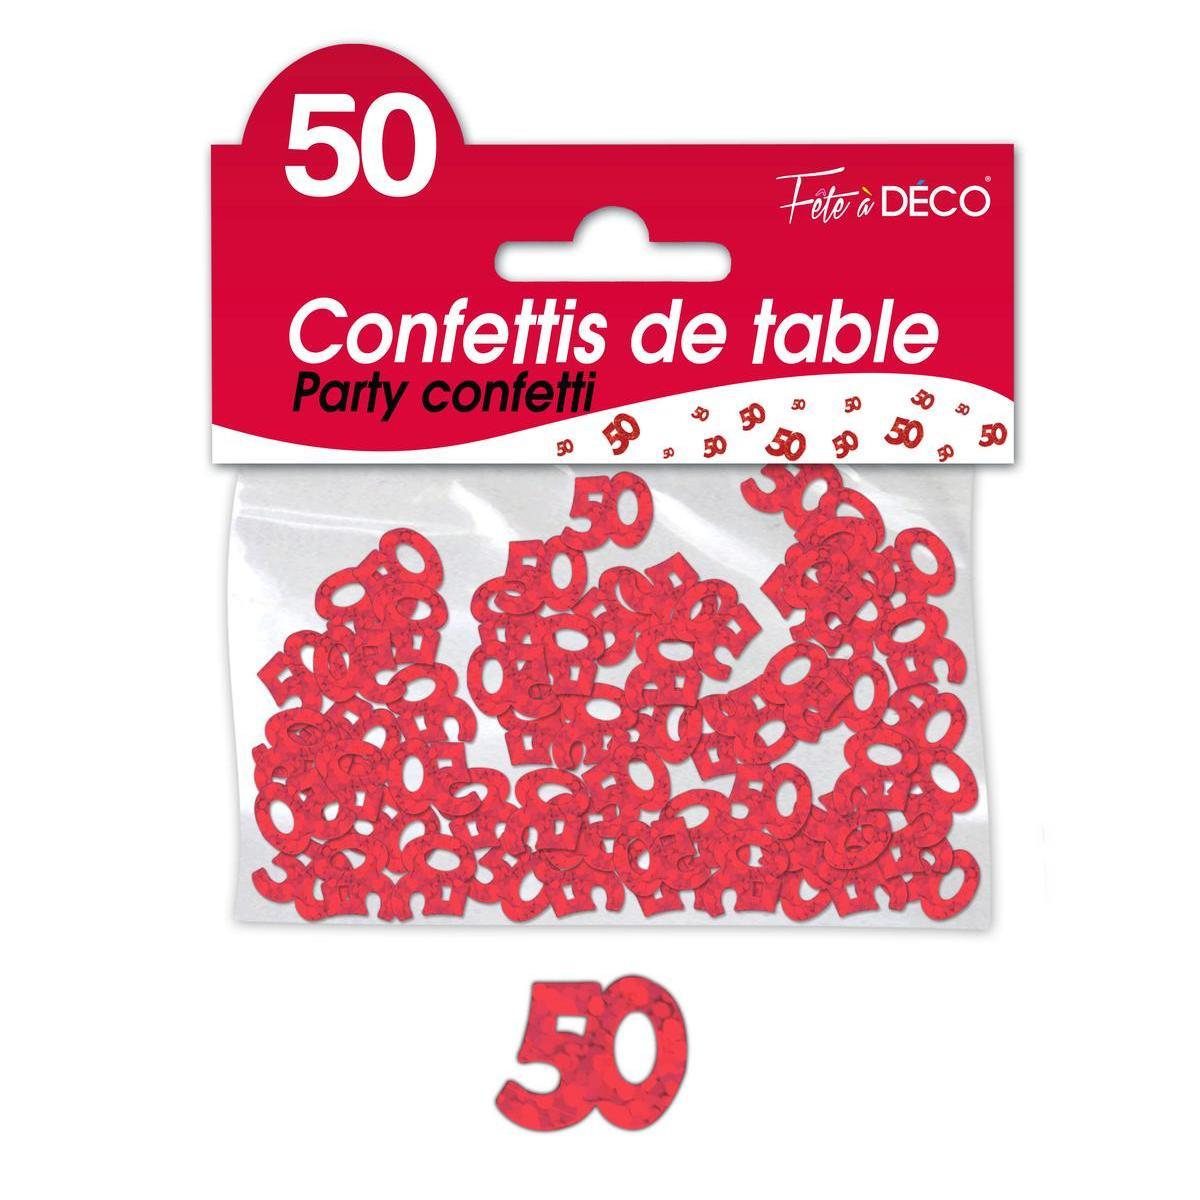 Confettis de table 50 ans rouge